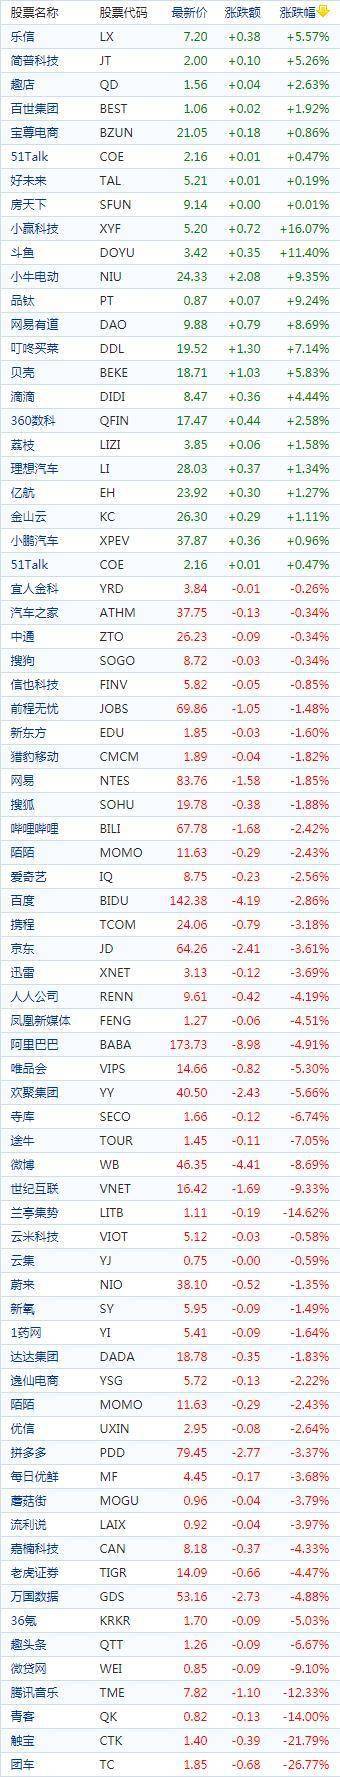 中国概念股周二收盘多数下跌 零售销售数据远不及预期